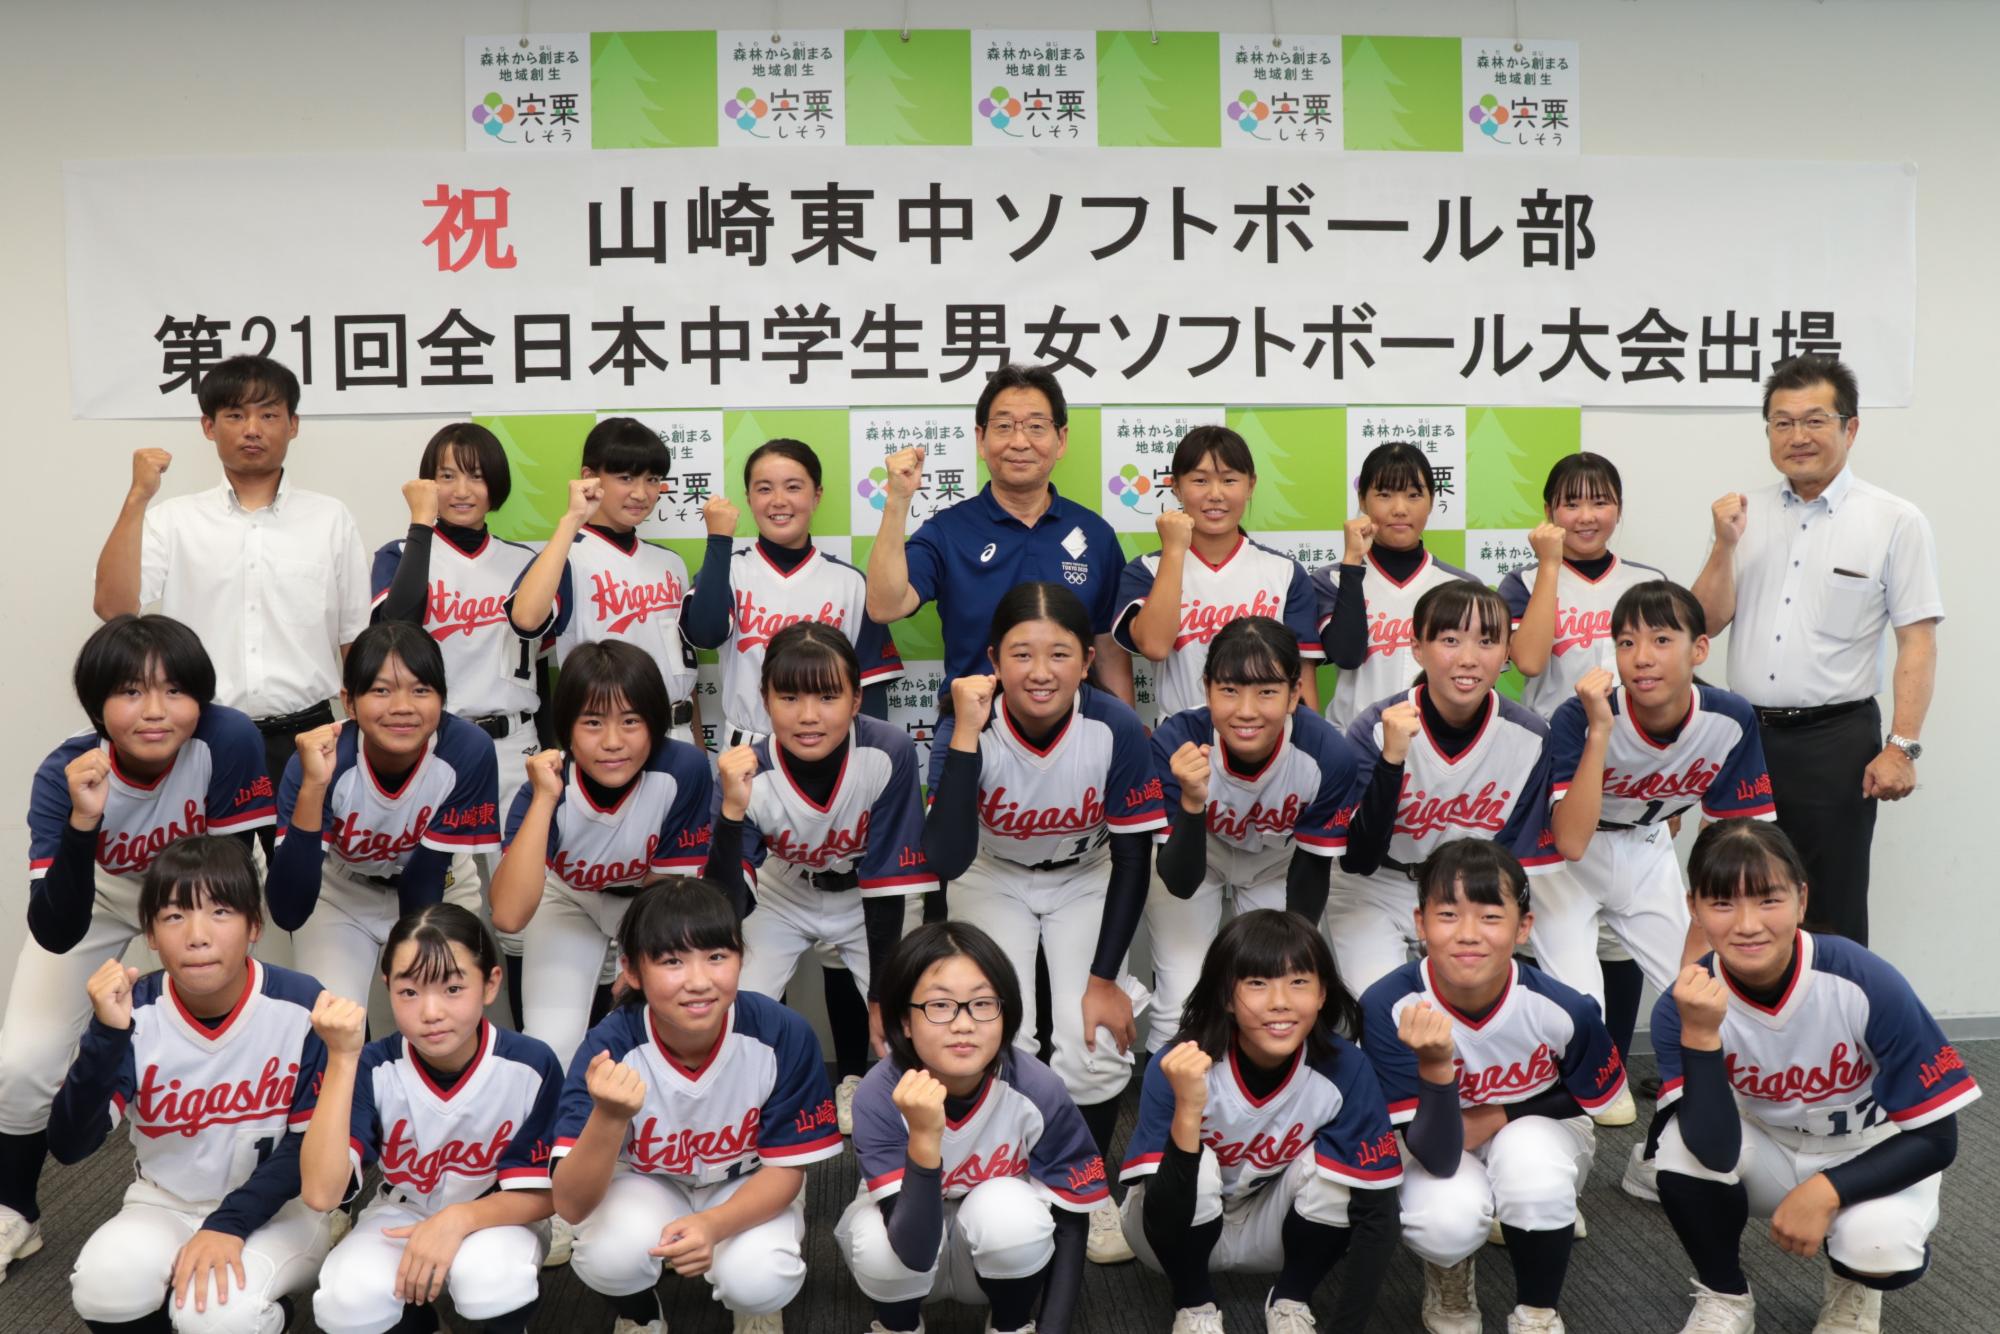 山崎東中学校女子ソフトボール部員らと福元市長がガッツポーズをして笑顔で並んでいる写真